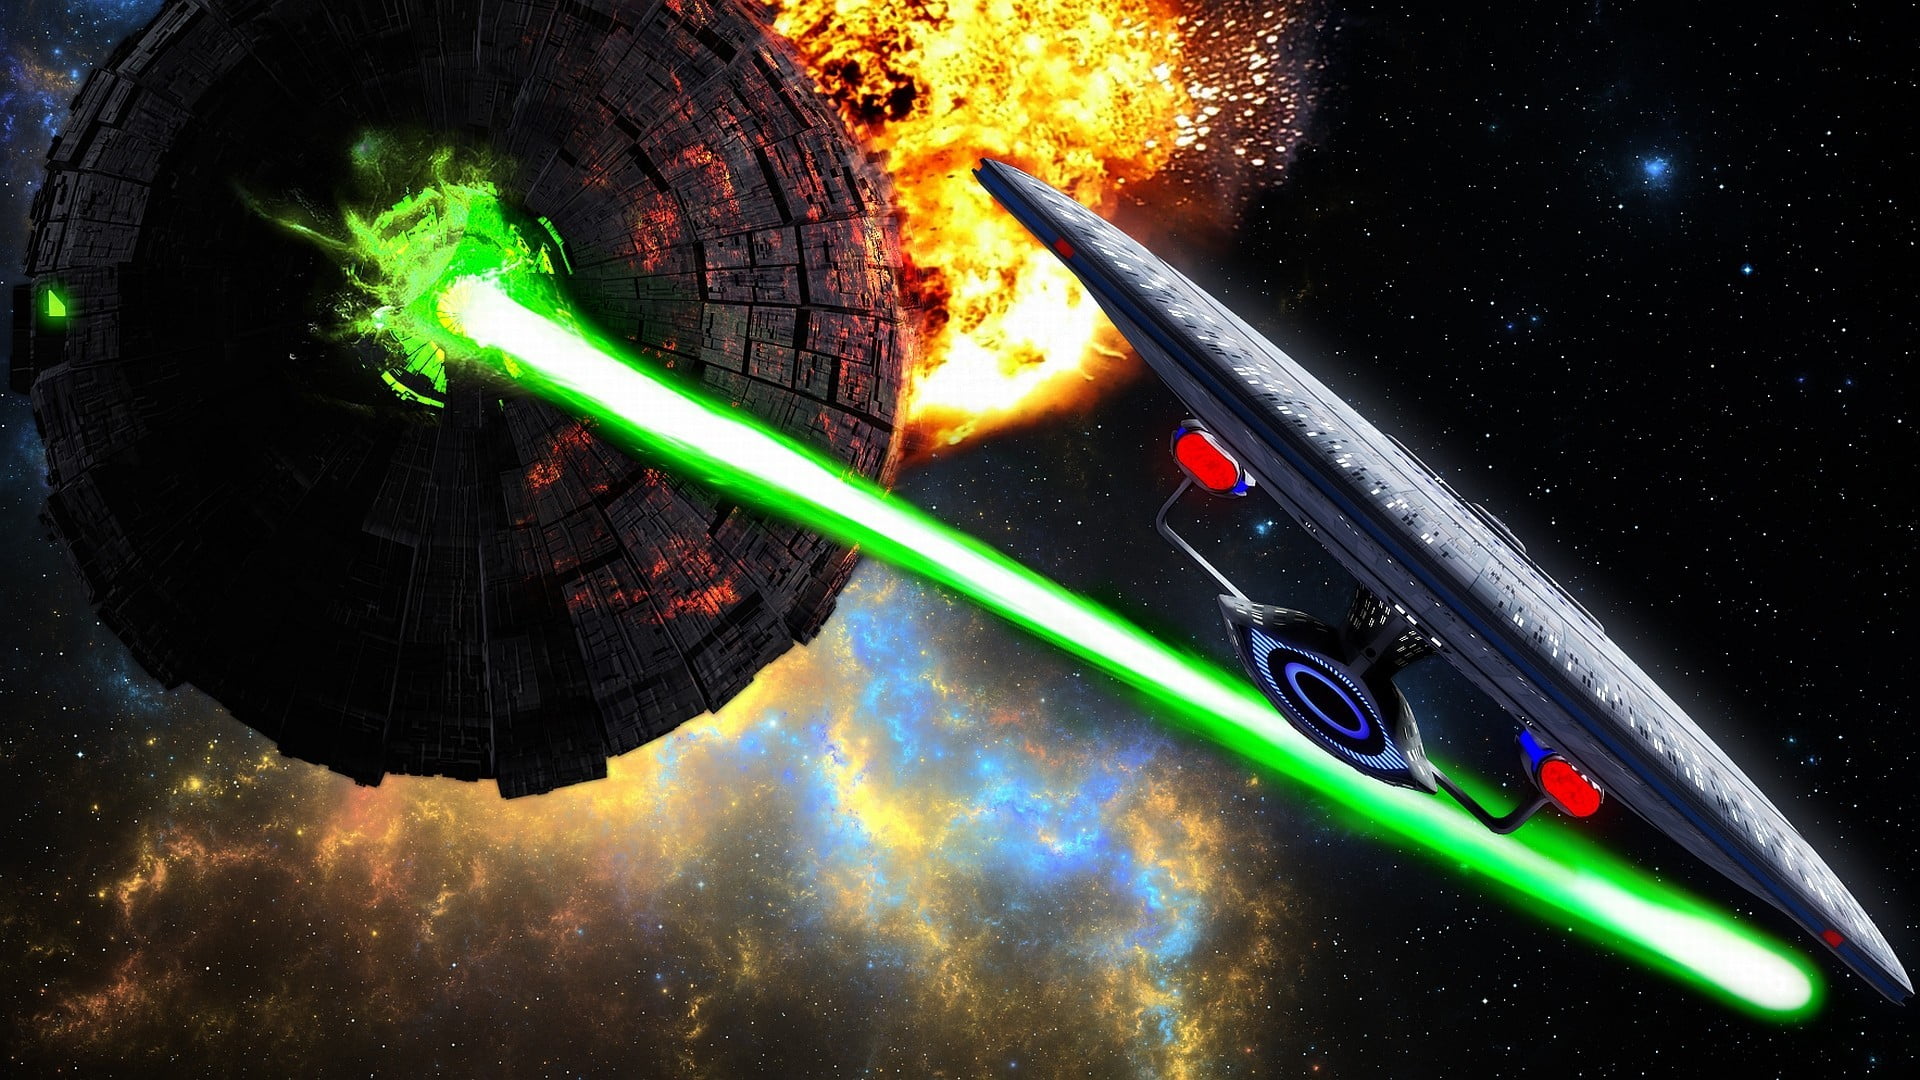 Star Wars Death Star digital wallpaper, artwork, Star Trek